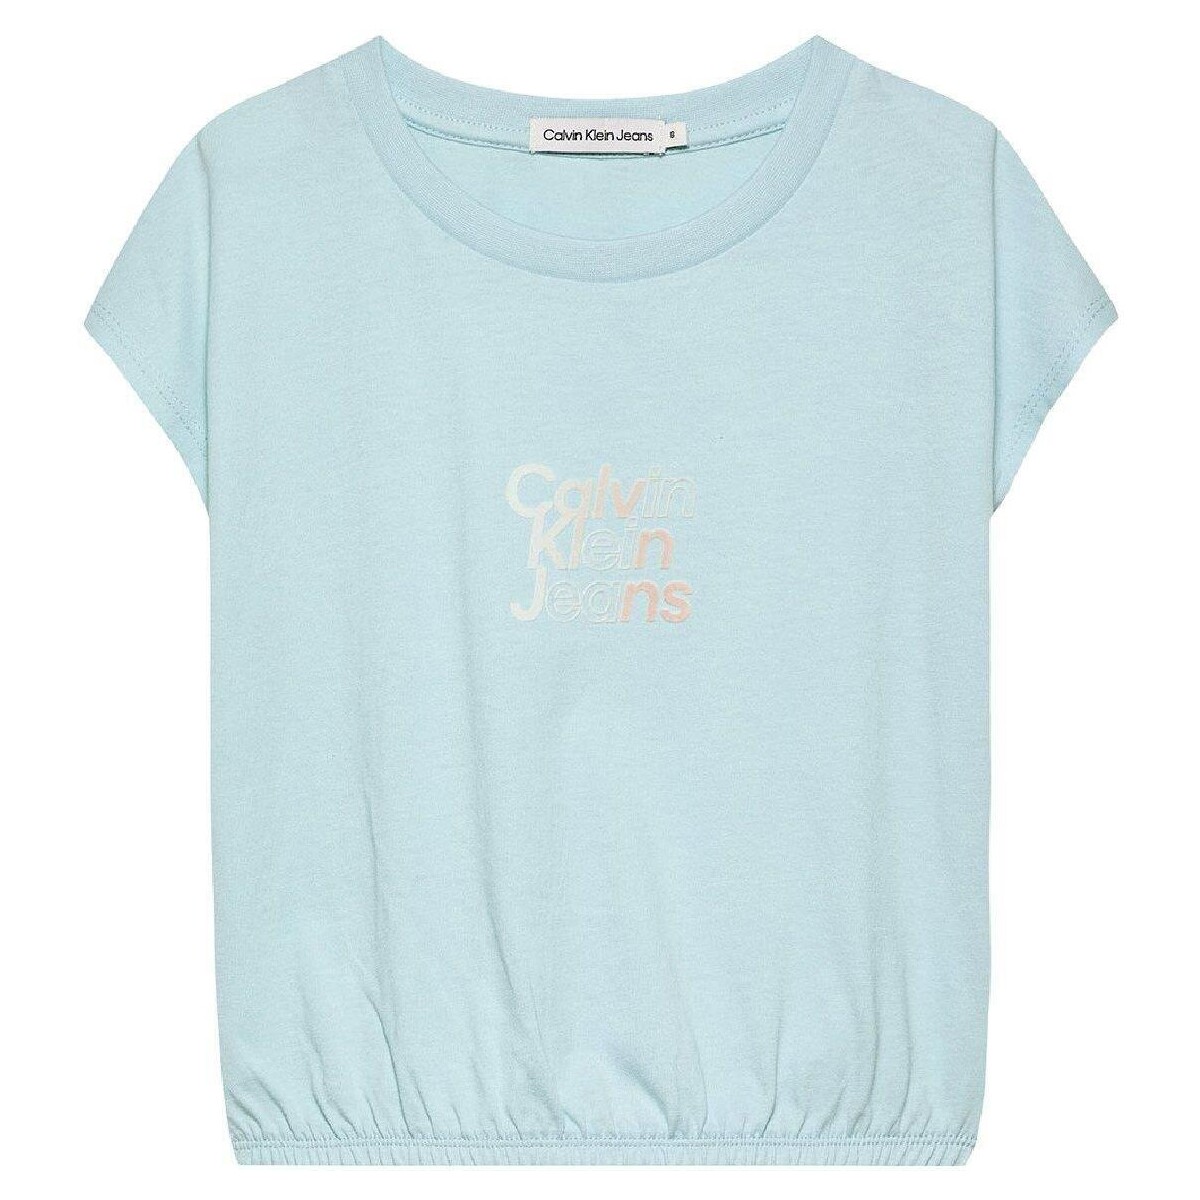 textil Pige T-shirts m. korte ærmer Calvin Klein Jeans  Blå